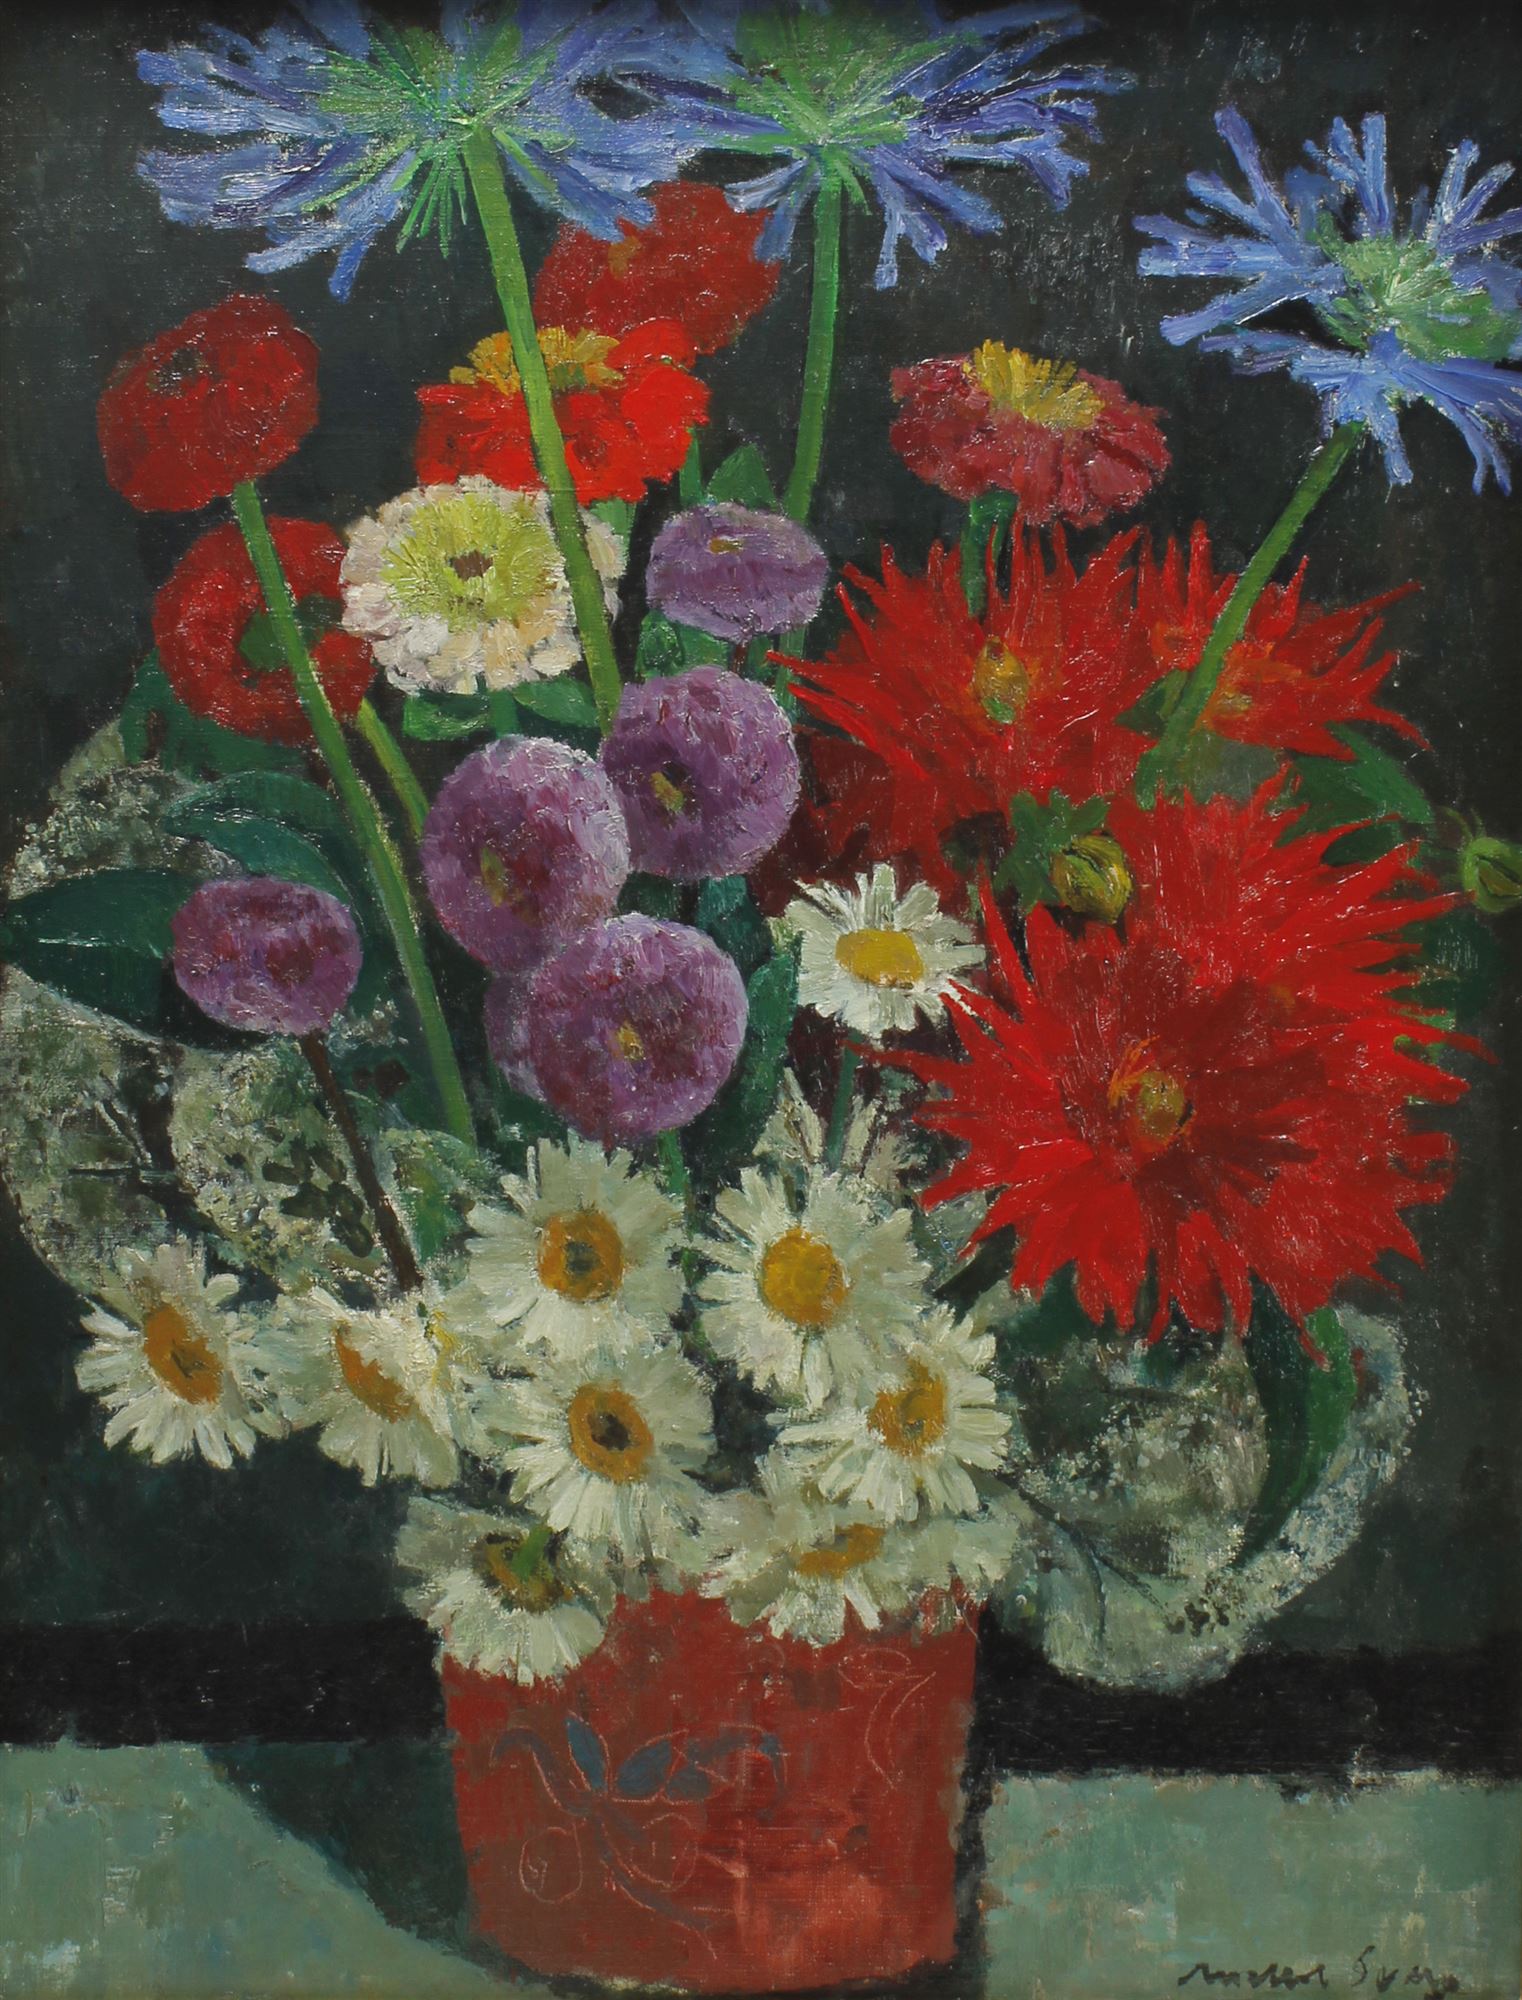 JOSEP MARIA MALLOL SUAZO (1910-1986). "FLOWERS".